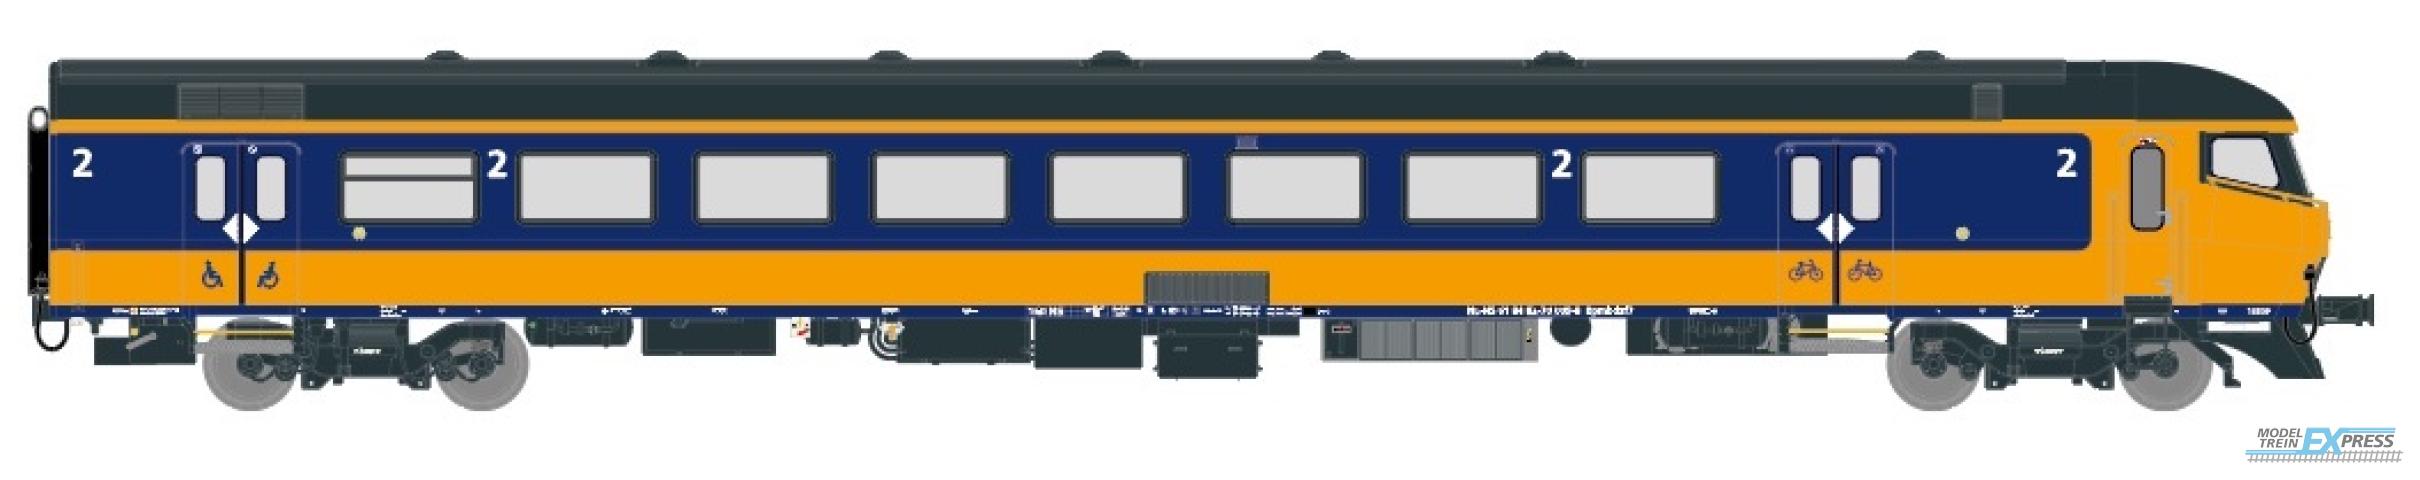 Exact-train 11011 NS ICRm Amsterdam - Rotterdam für den Inlandseinsatz Steuerwagen Bpmbdzf7 (Farbe Gelb / Blau) (DC), Ep. VI